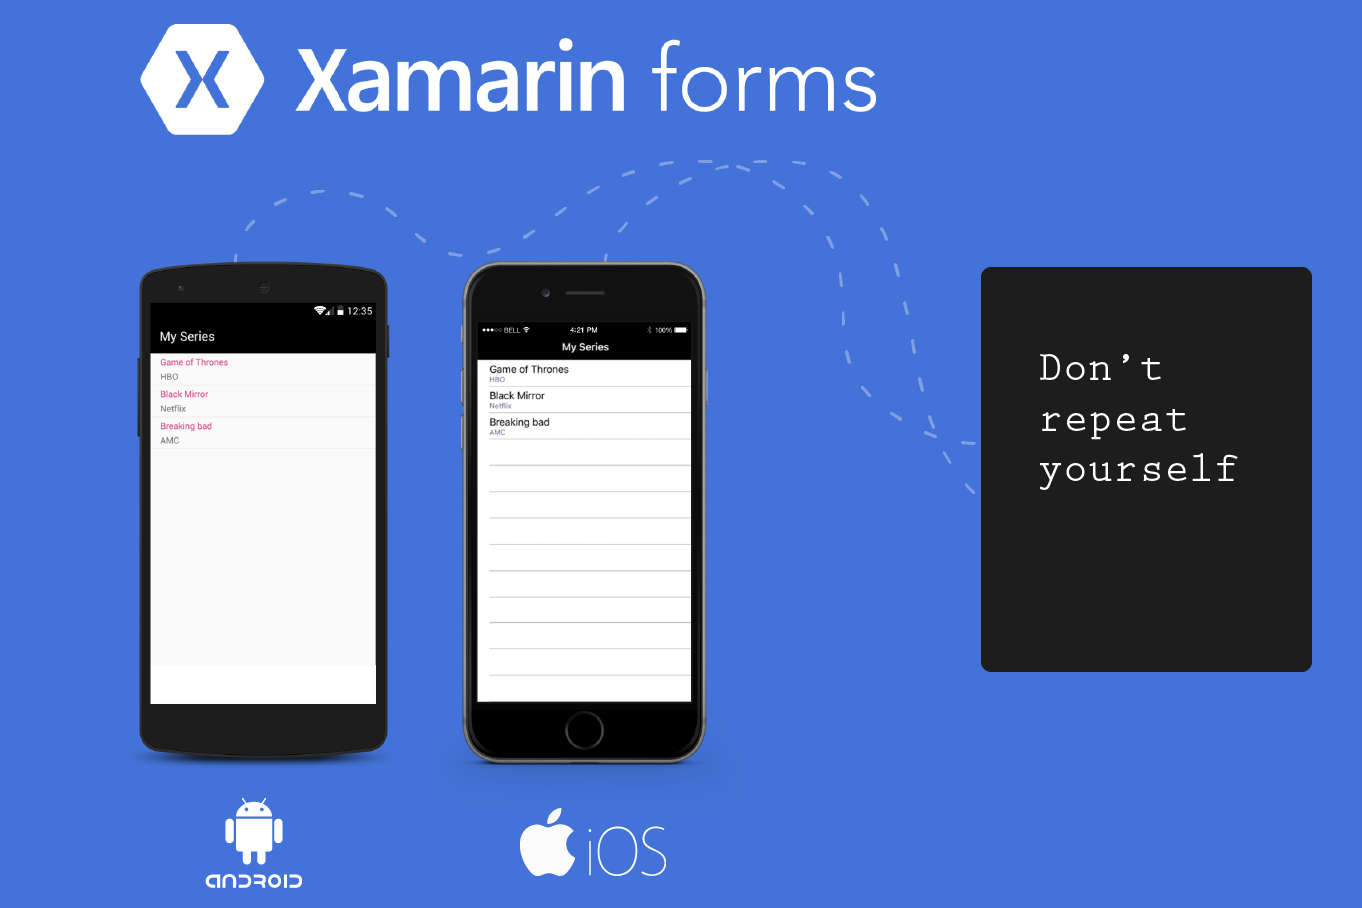 Với thiết kế giao diện Xamarin.Forms UI đẹp mắt và dễ sử dụng, bạn sẽ có trải nghiệm thú vị khi sử dụng ứng dụng. Hãy xem hình ảnh để tìm hiểu thêm về đặc tính của thiết kế giao diện này.